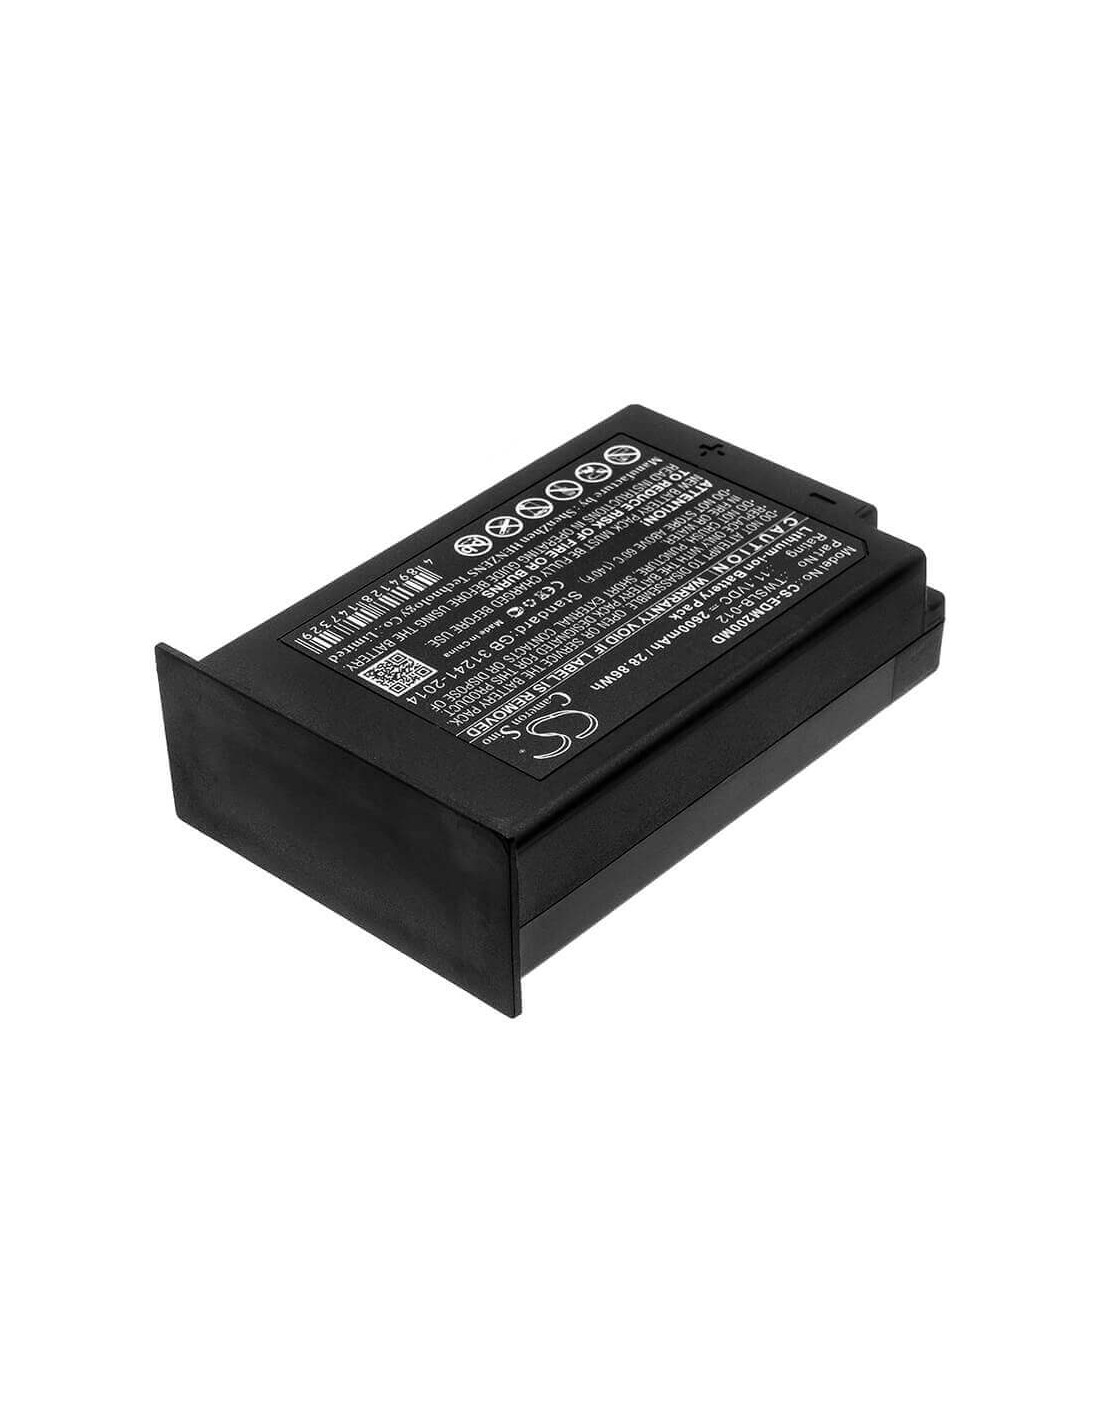 Battery for Edan, Im12, Im20, 11.1V, 2600mAh - 28.86Wh